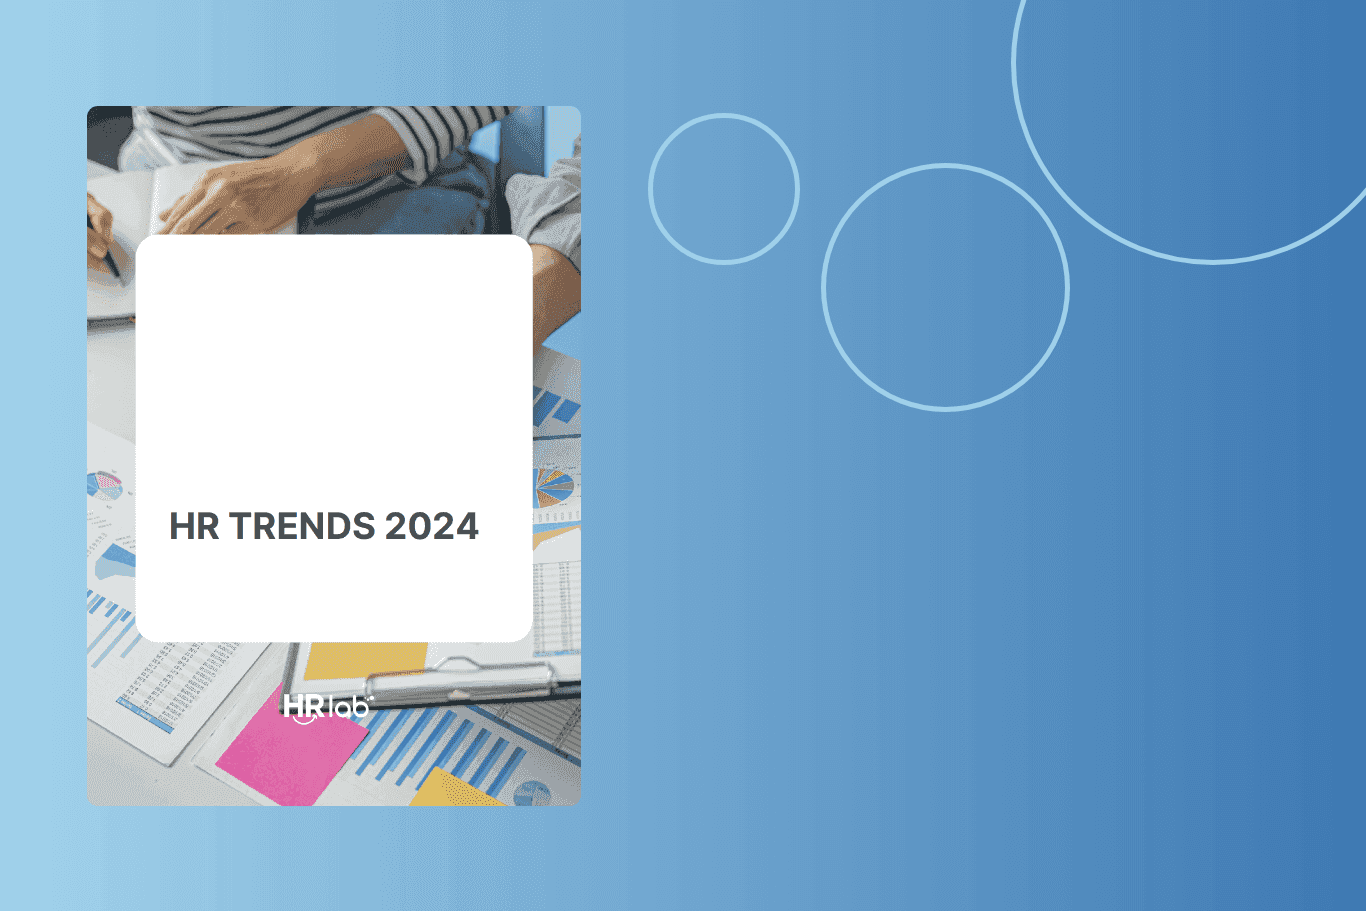 HRlab Das sind die HR-Trends 2024